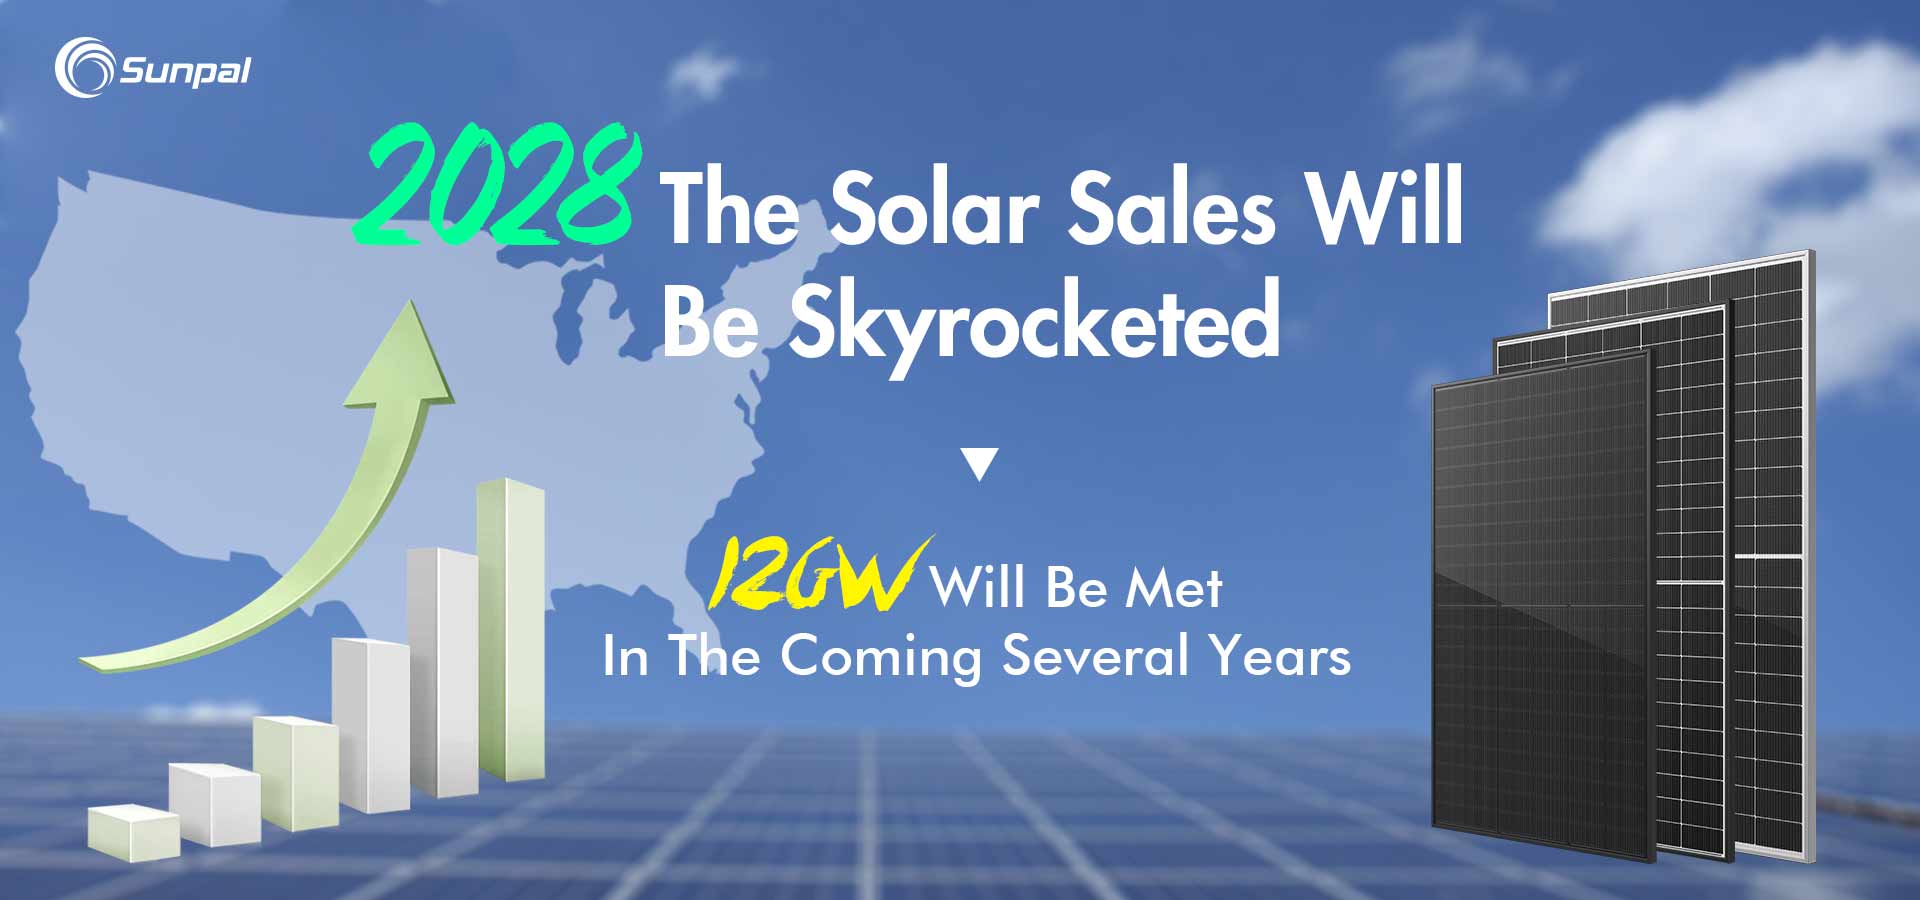 Les ventes solaires commerciales vont exploser alors que le marché américain atteindra 14 GW d’ici 2028